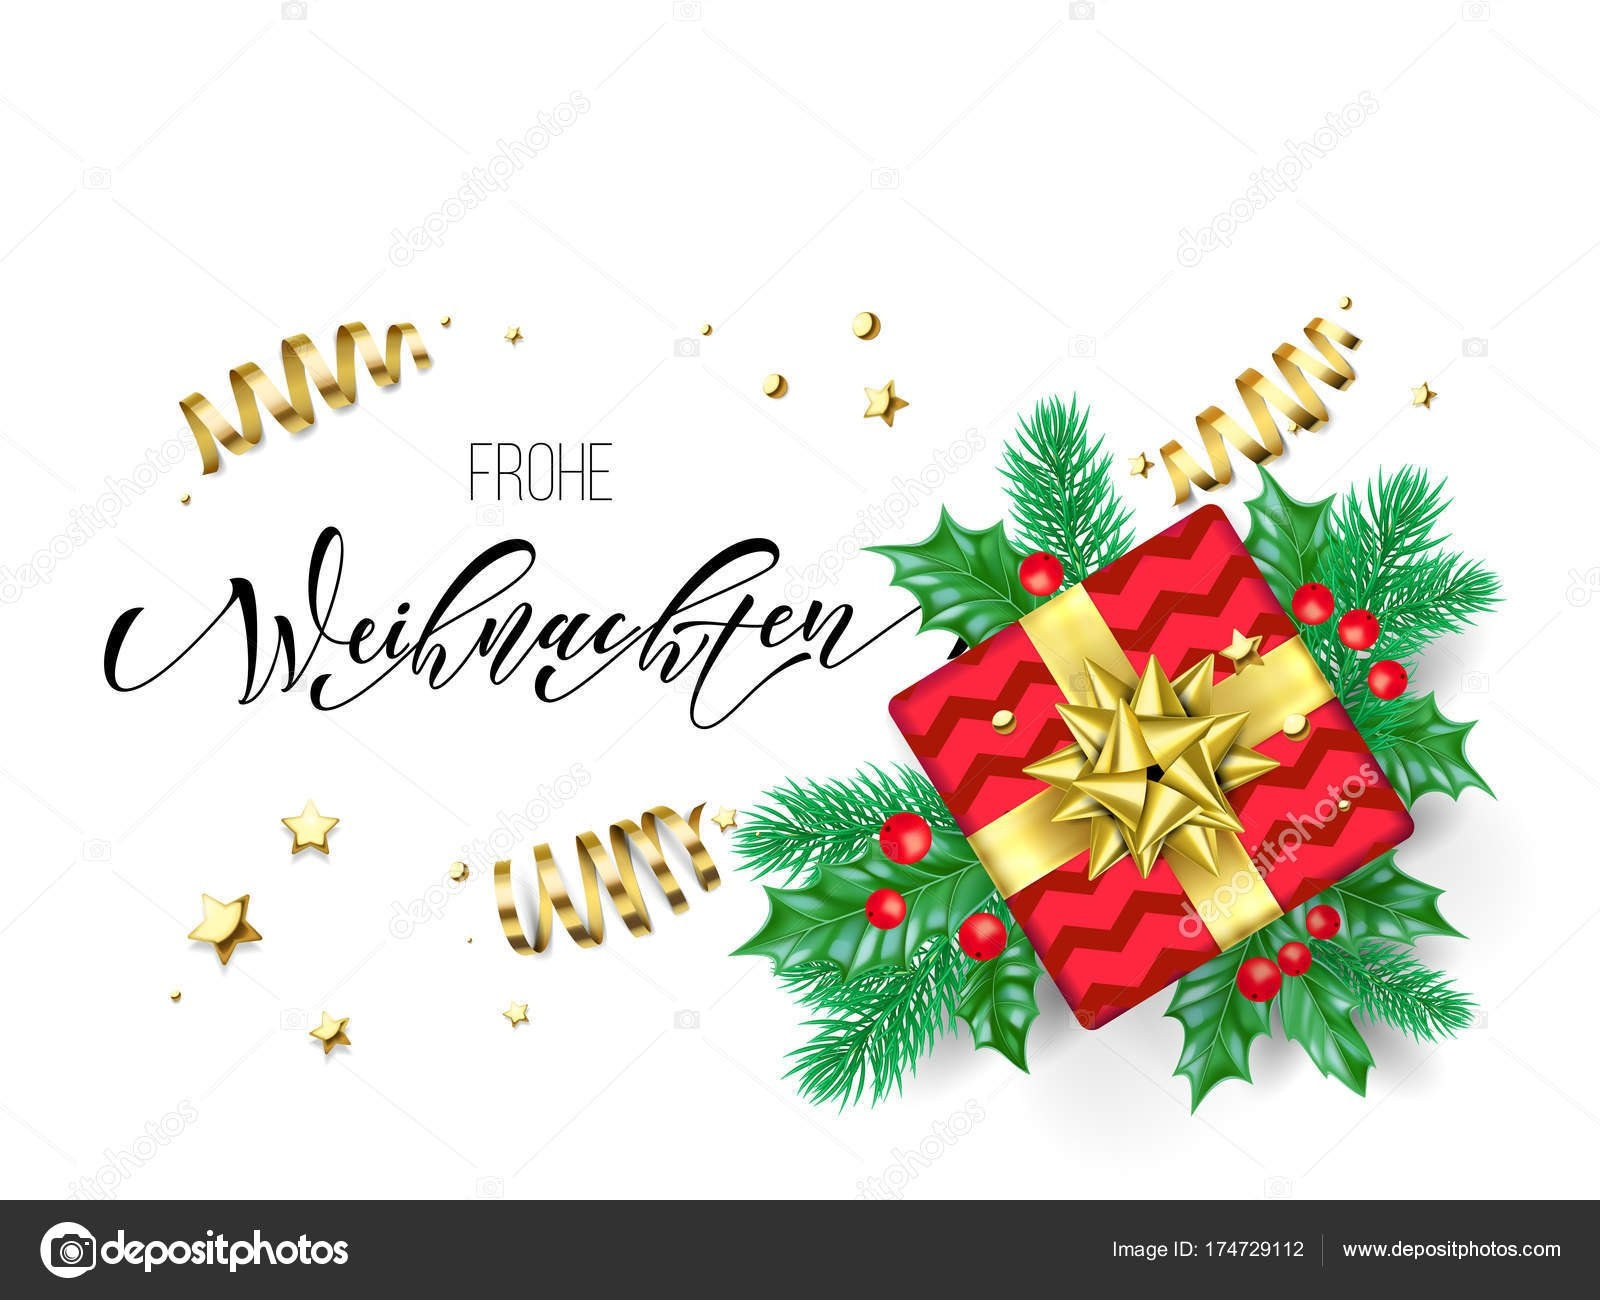 free-printable-german-christmas-cards